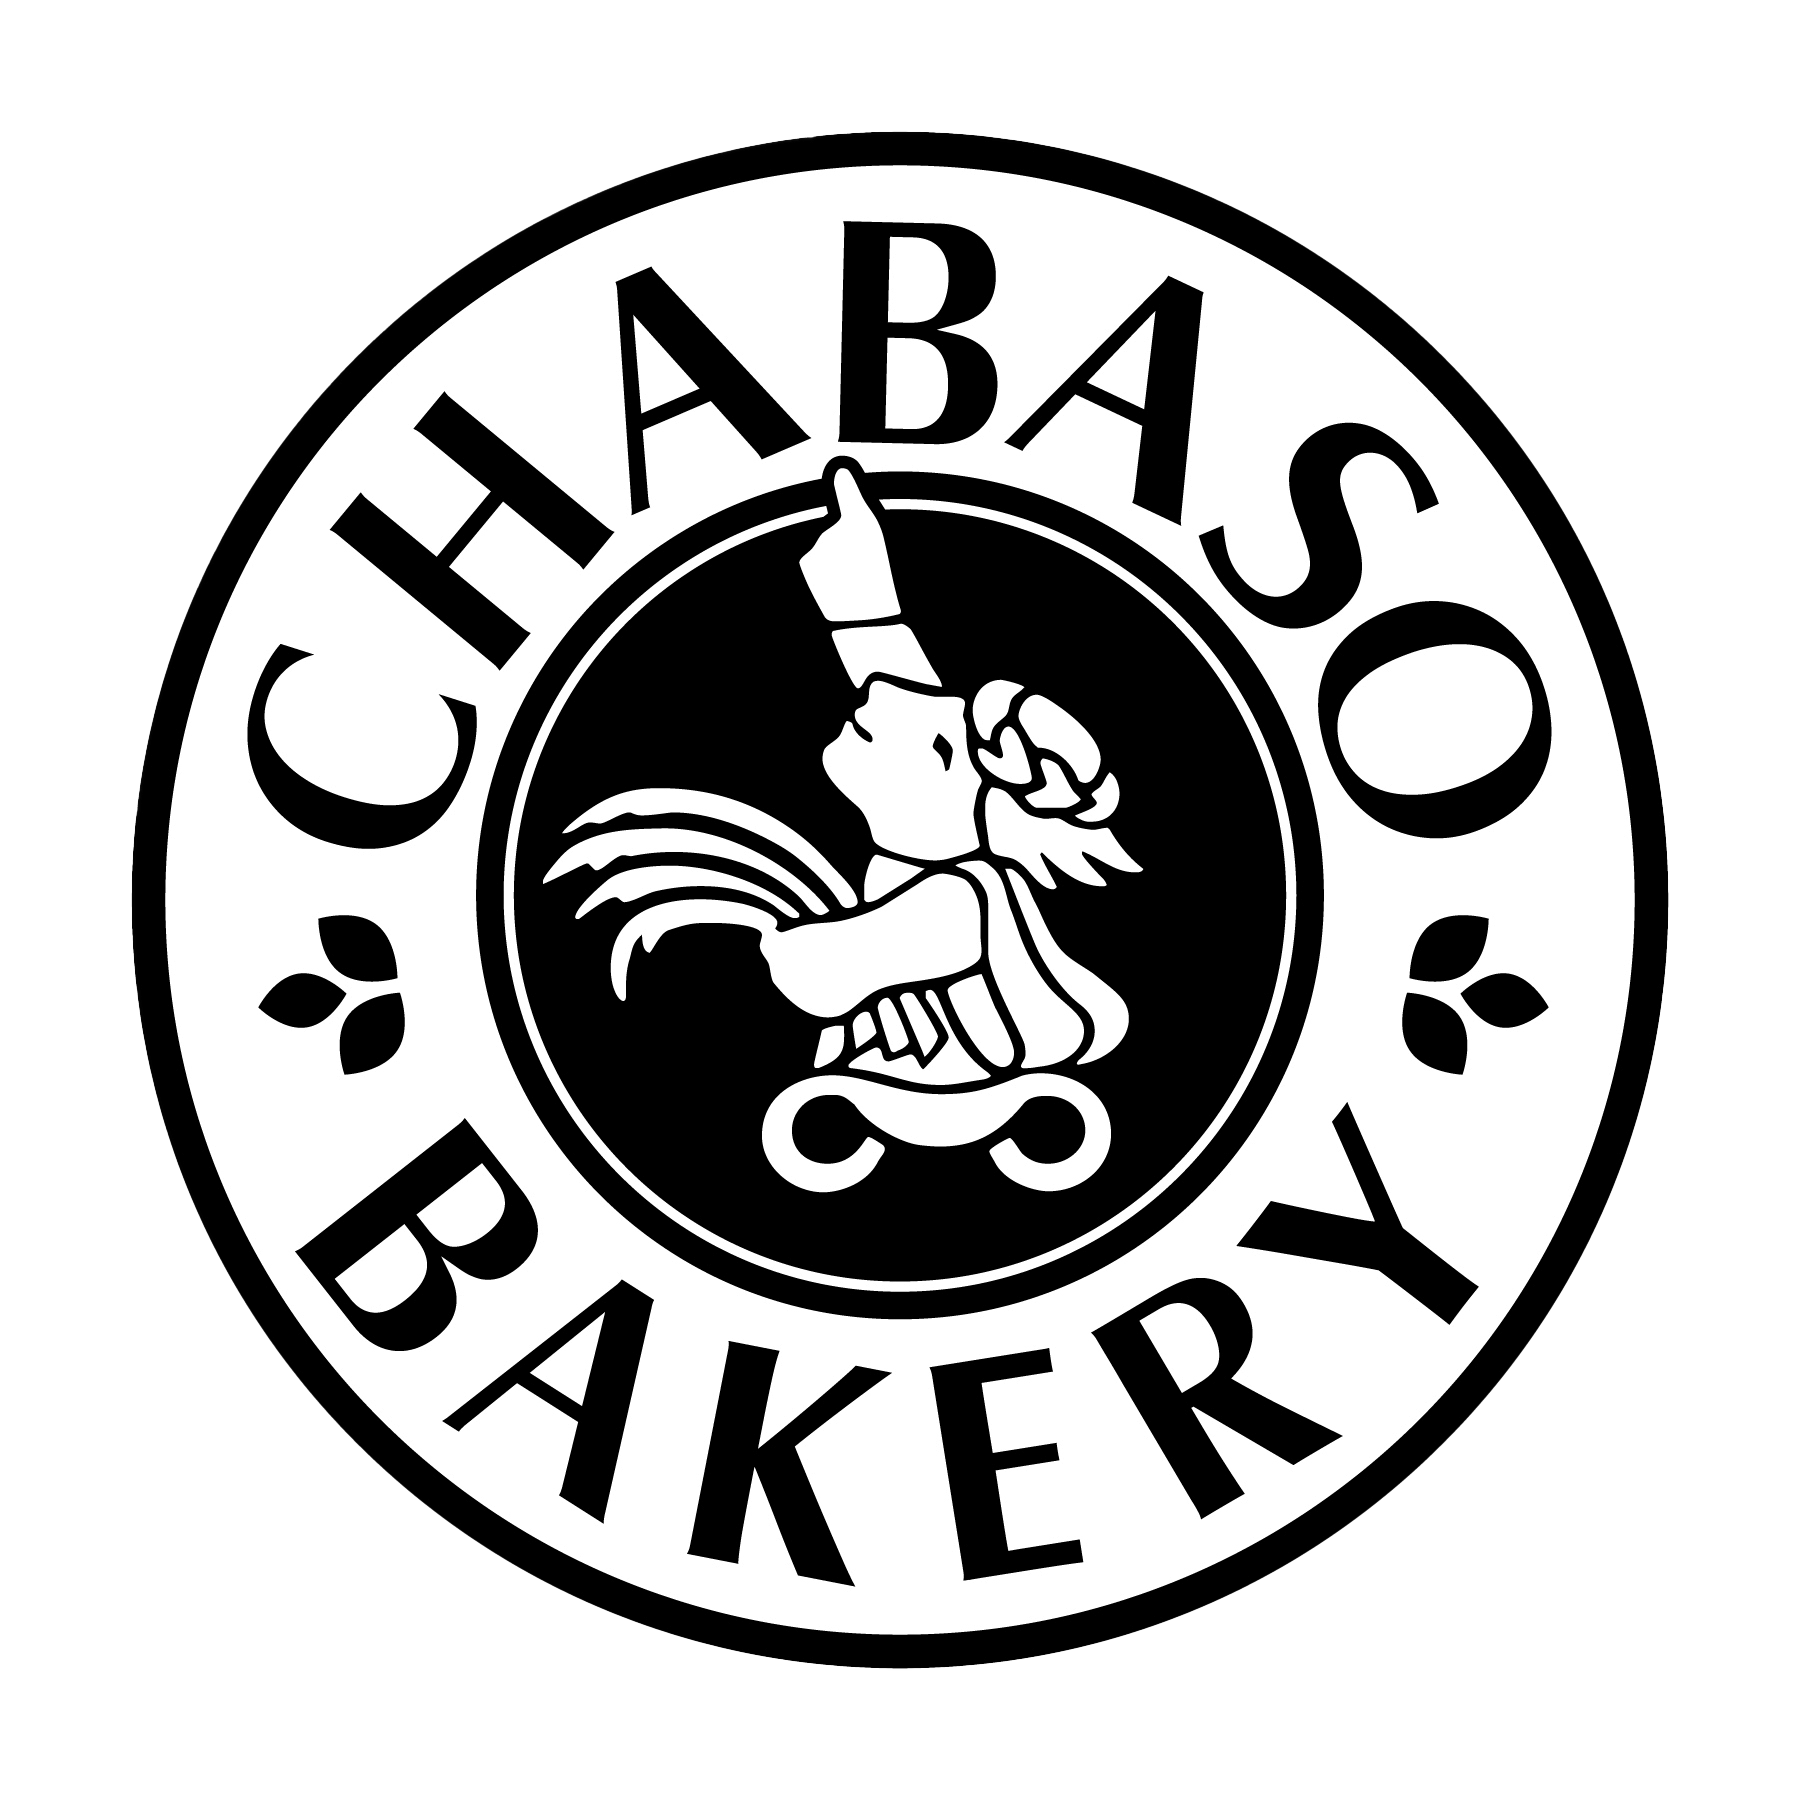 Chabaso Bakery seal logo